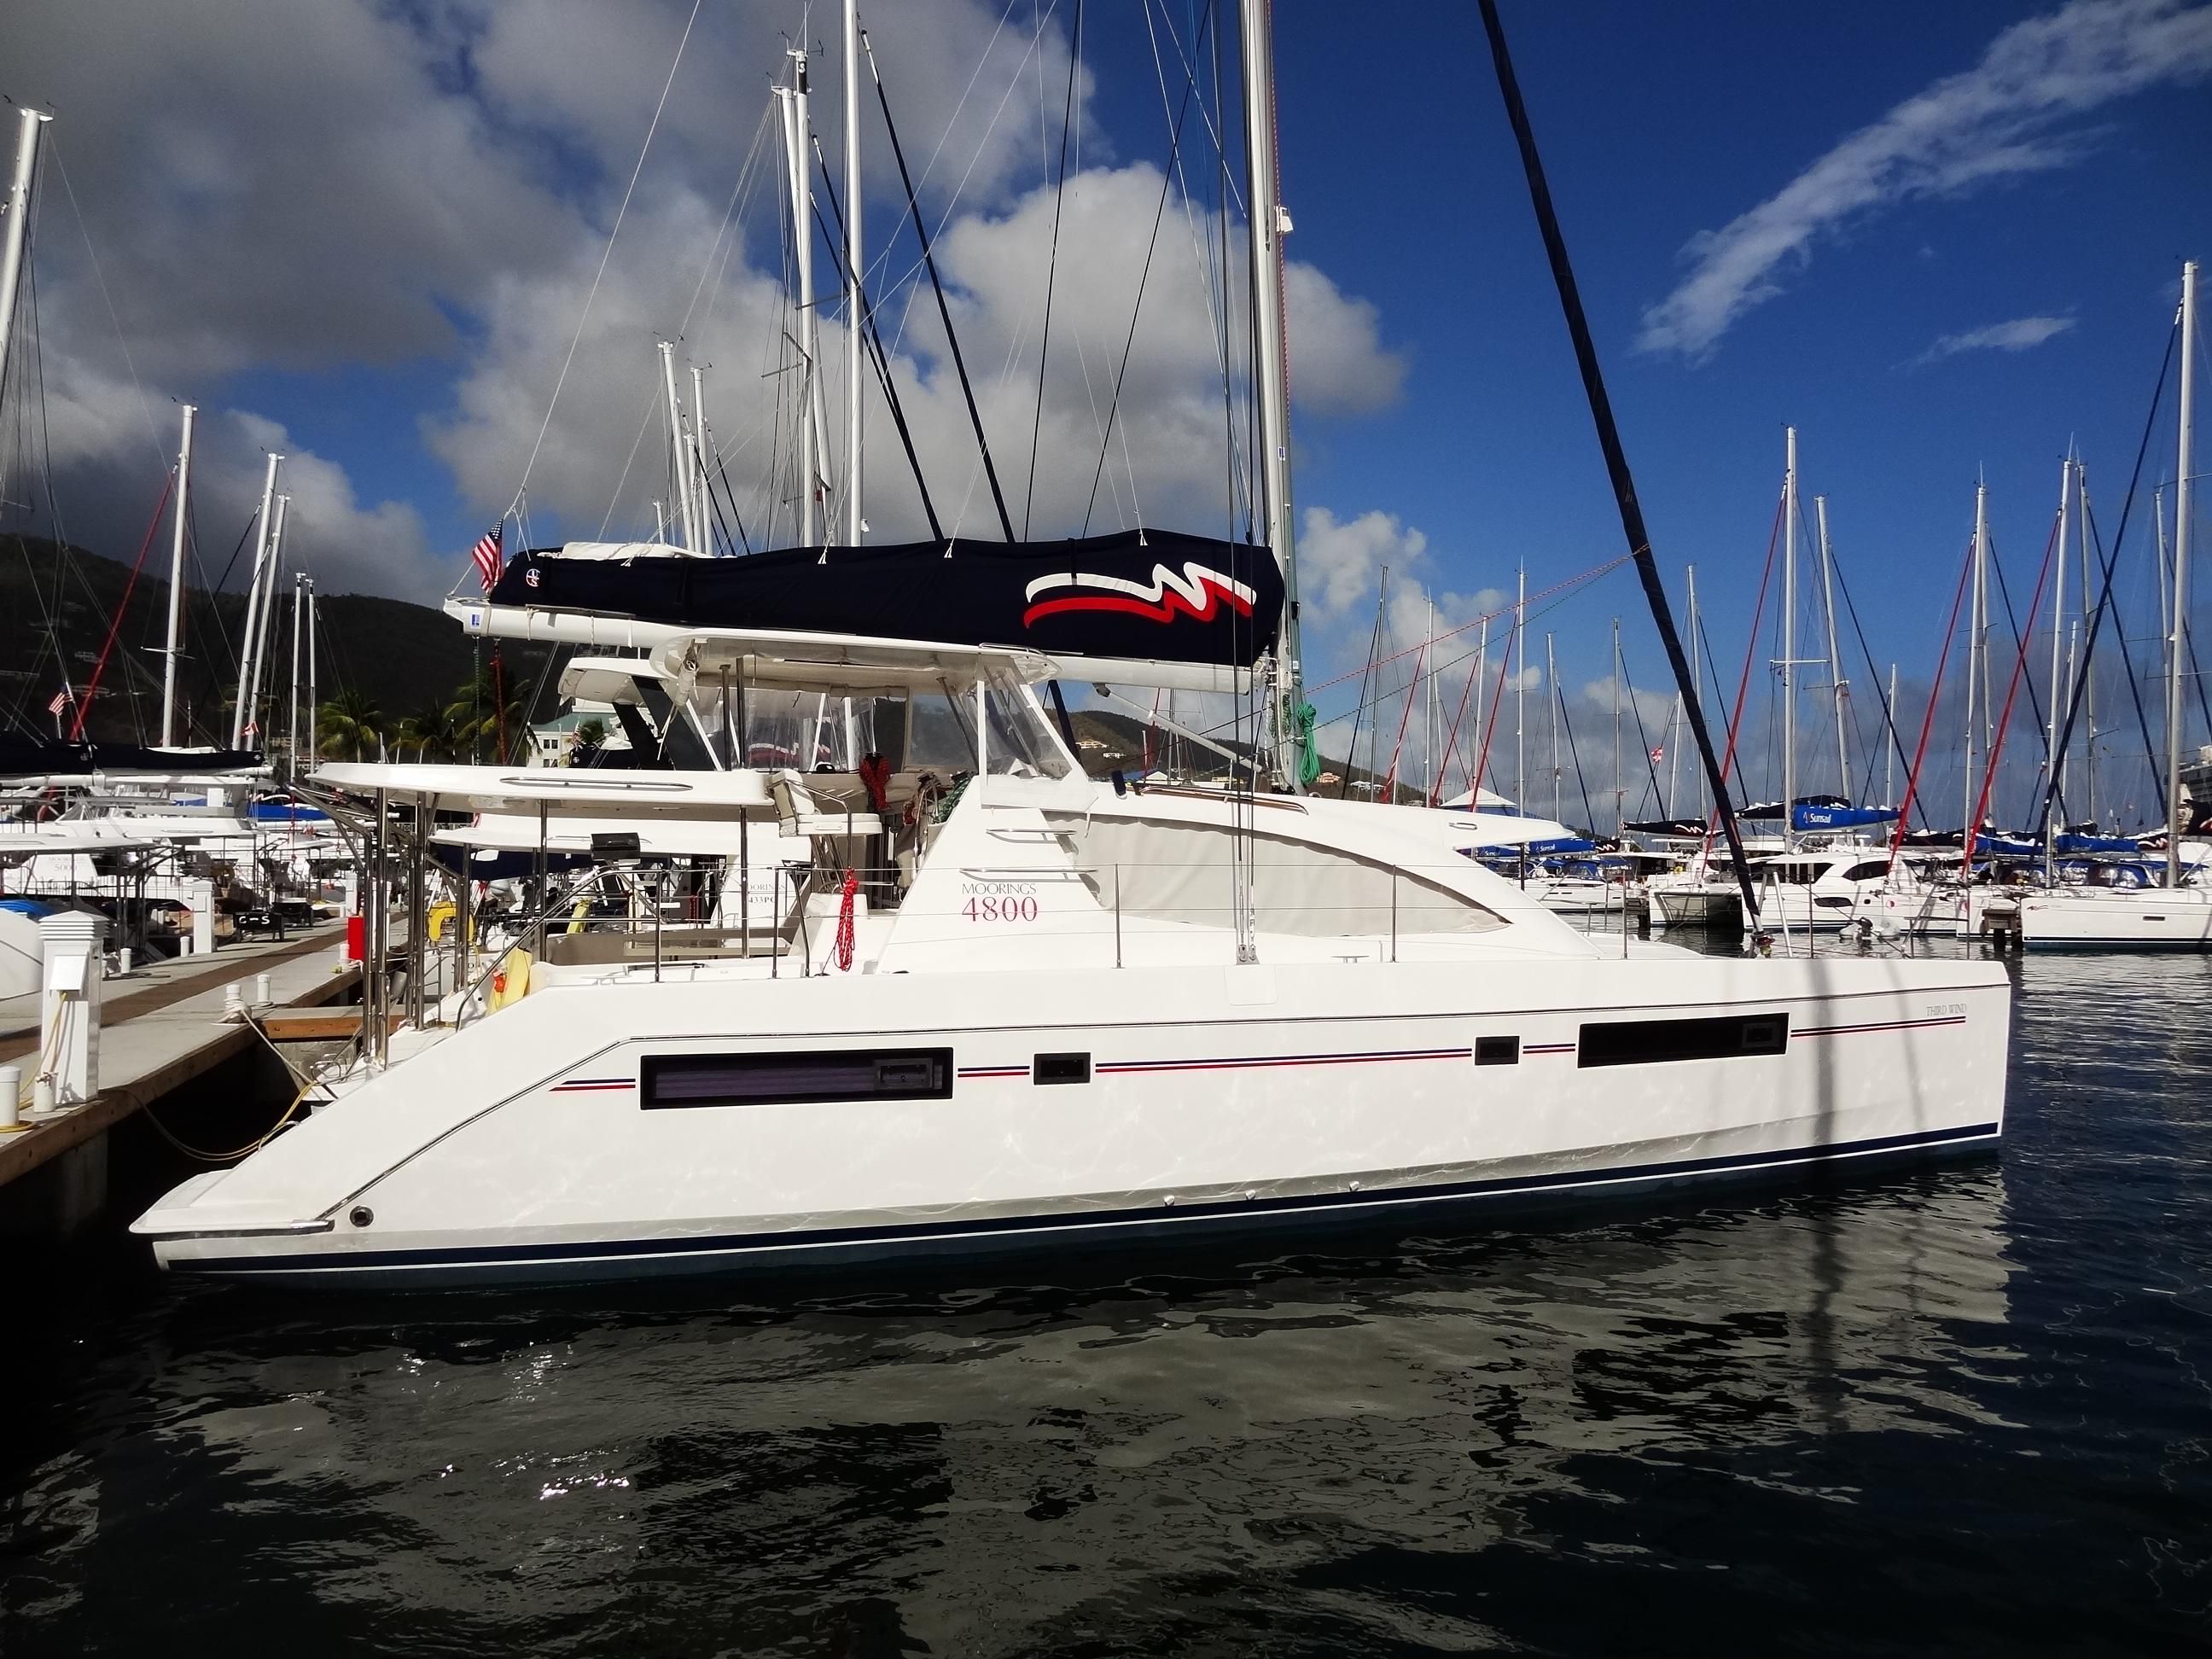 2014 Leopard 48 Catamaran for sale - YachtWorld